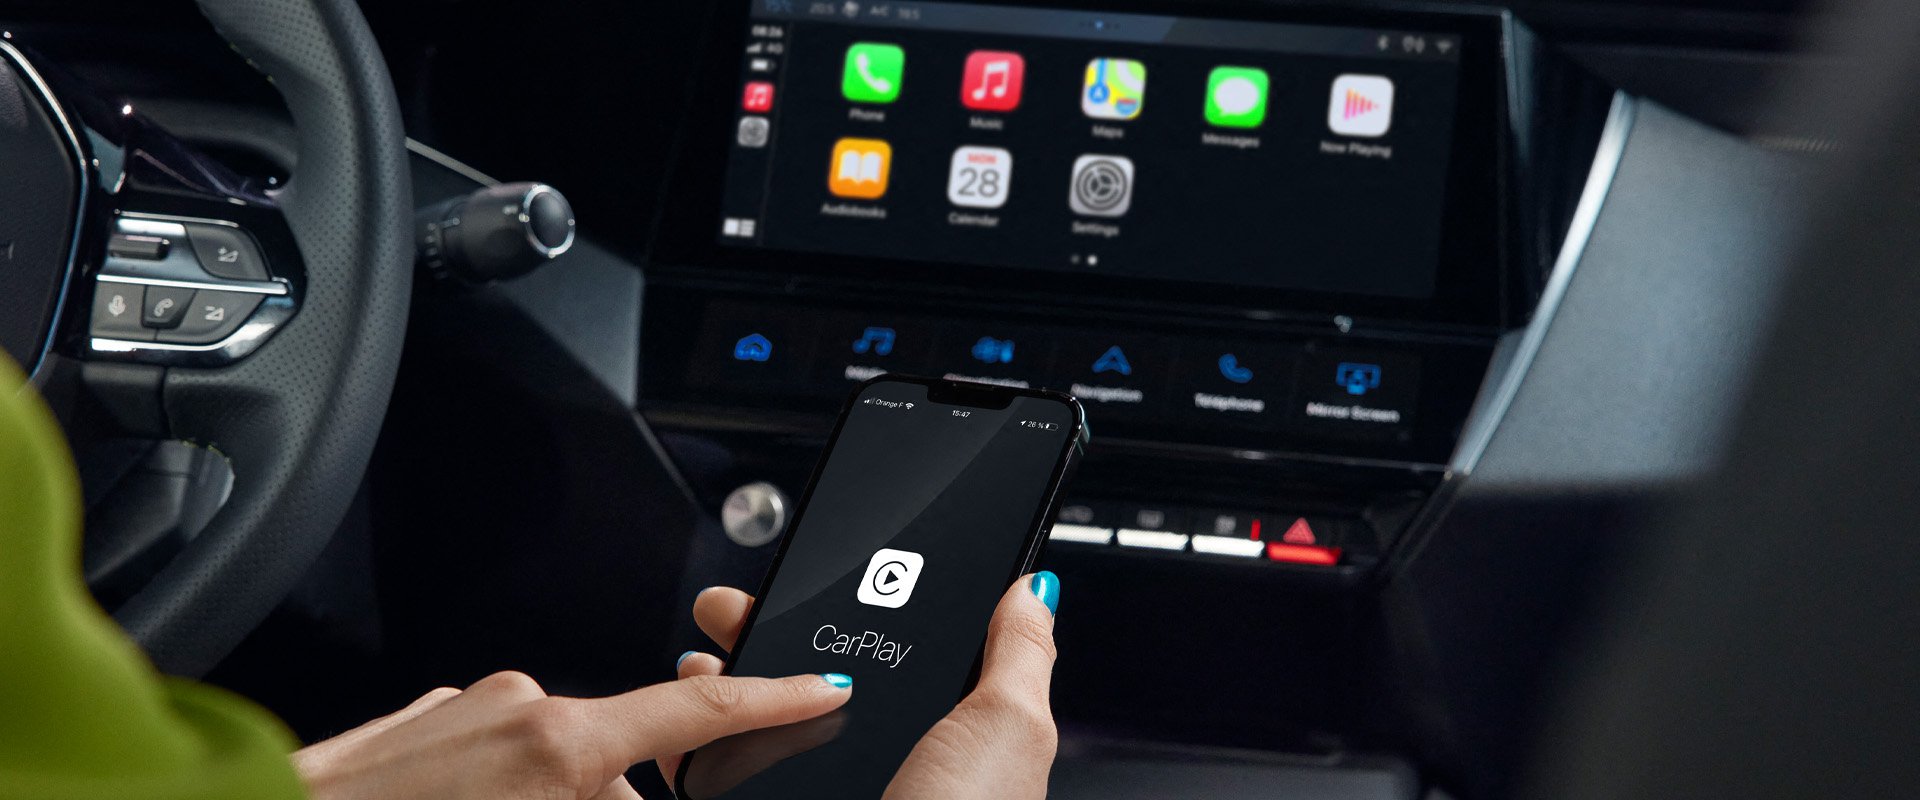 Android Auto, Apple CarPlay, MirrorLink - czym są i jakie mają zalety?